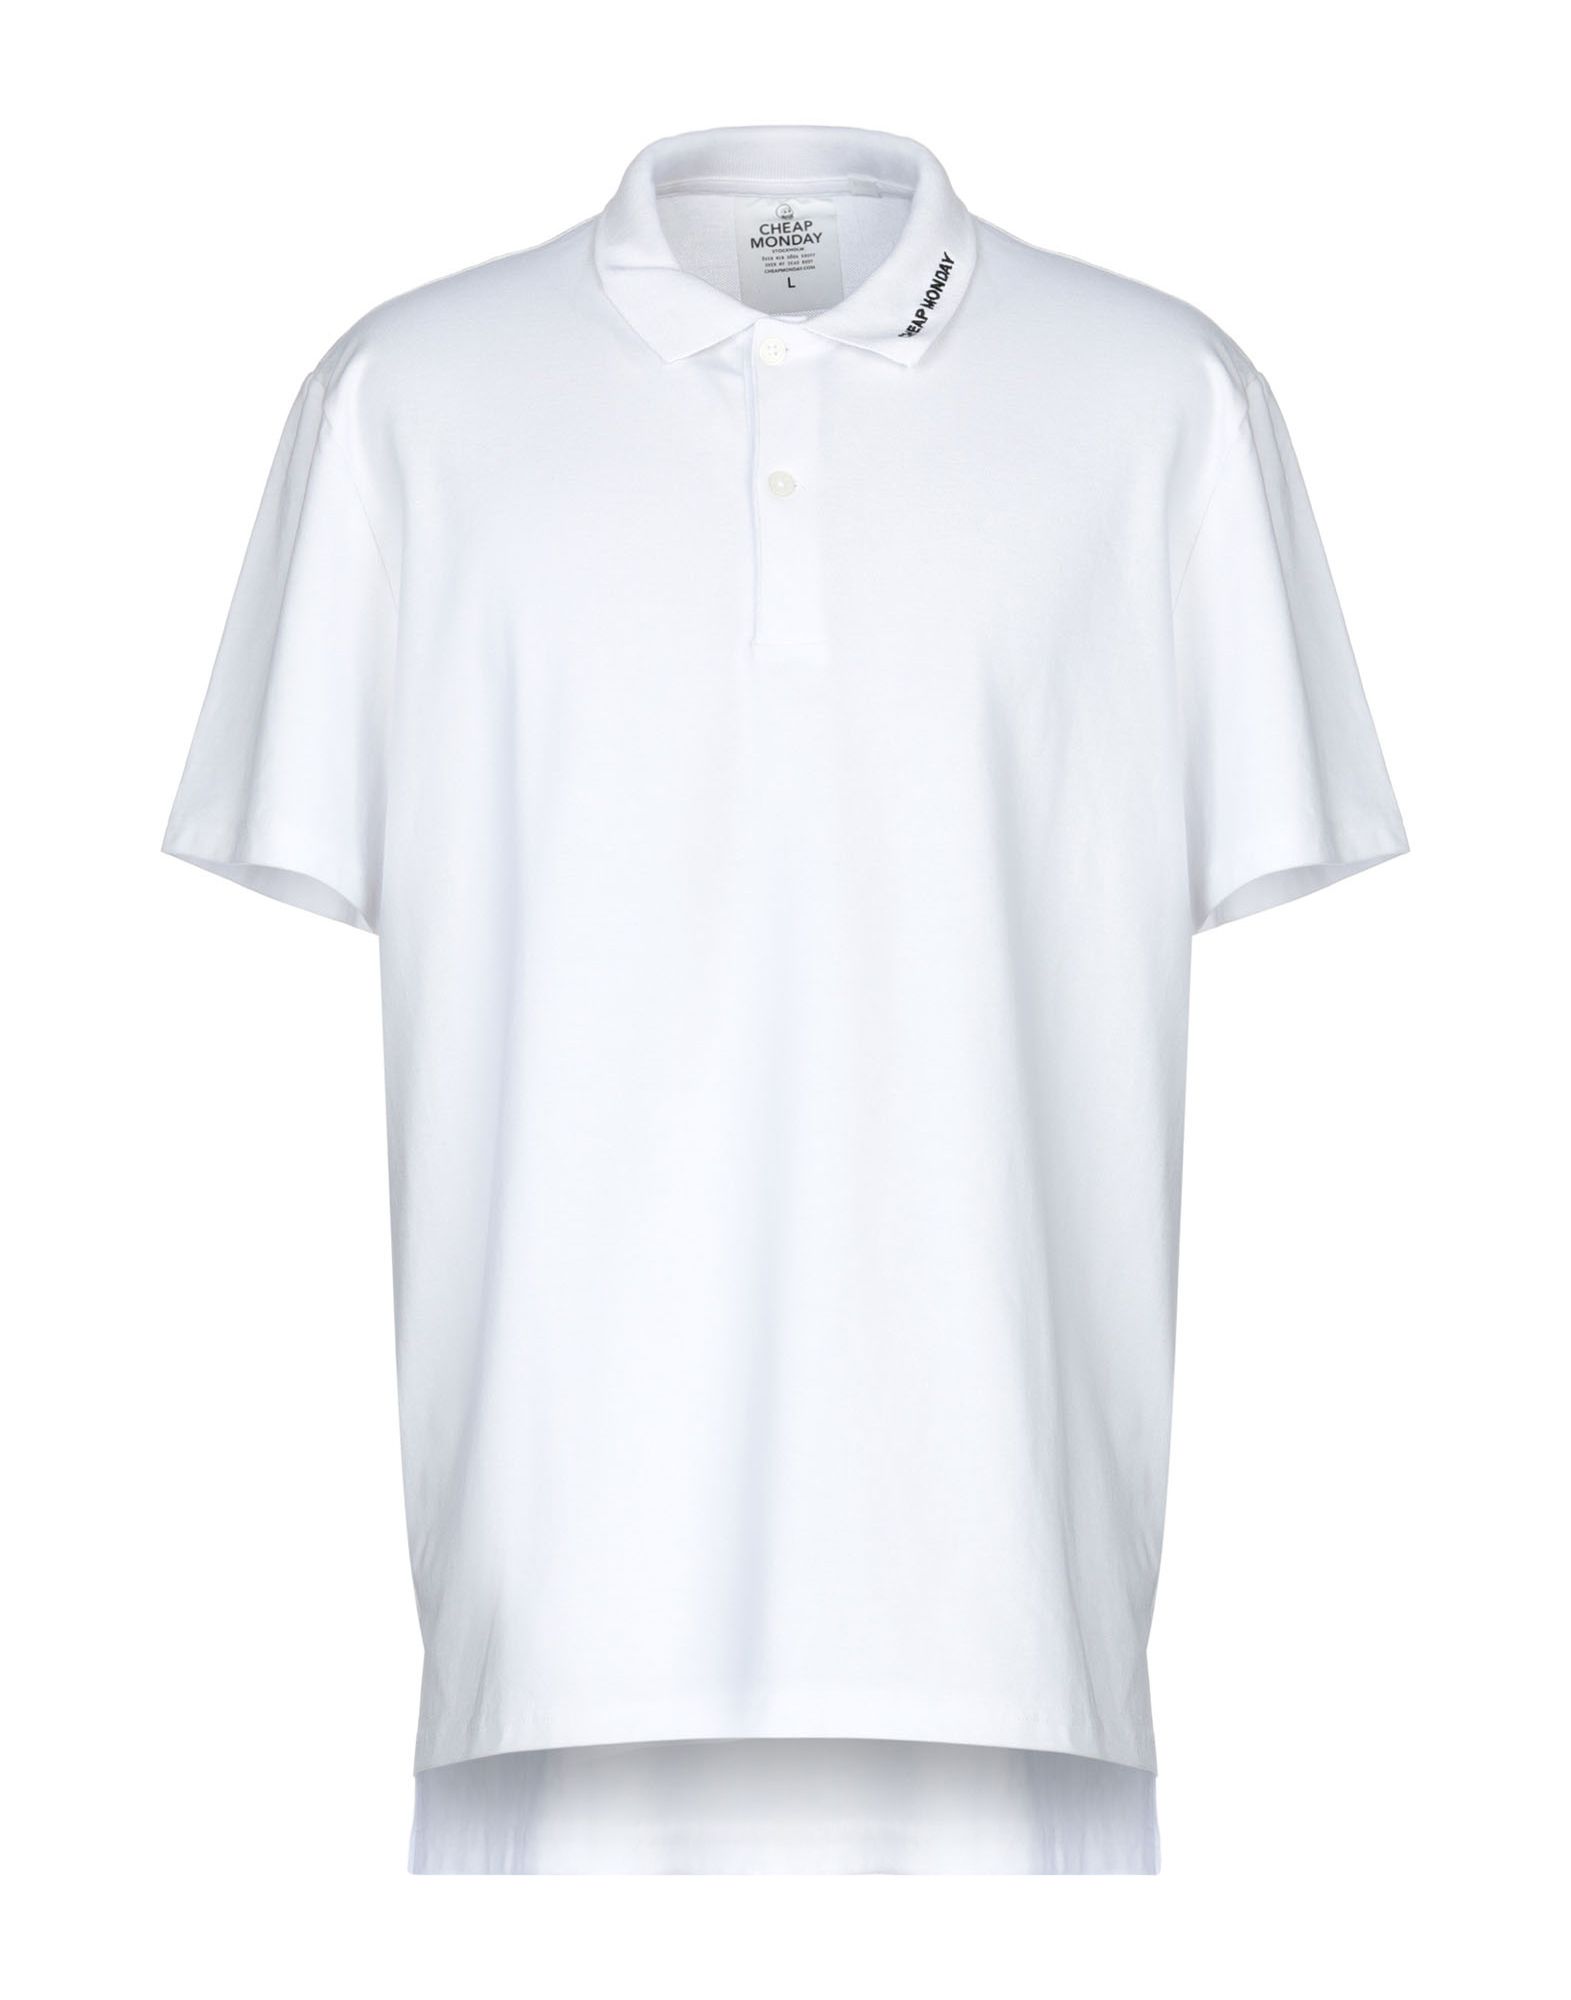 《送料無料》CHEAP MONDAY メンズ ポロシャツ ホワイト XS コットン 100%